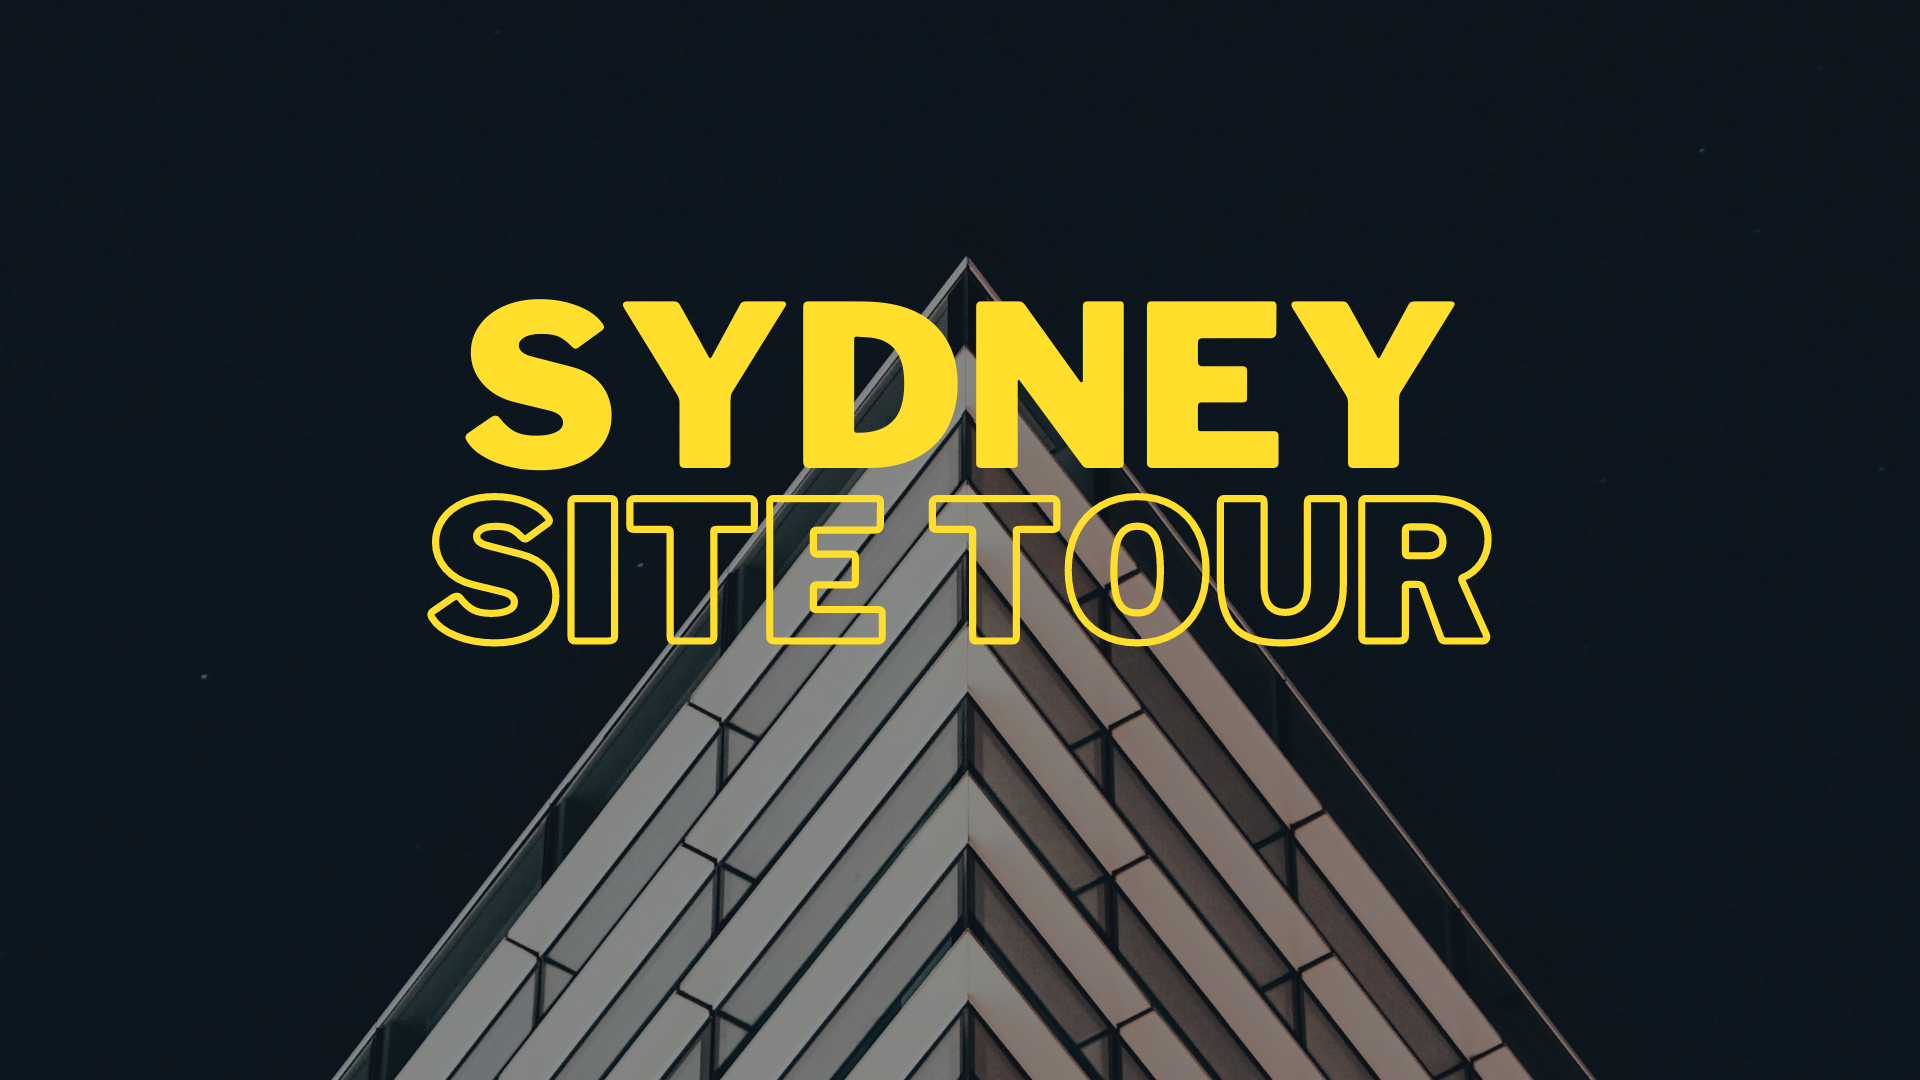 Dowell Windows Site Tour, Smithfield NSW